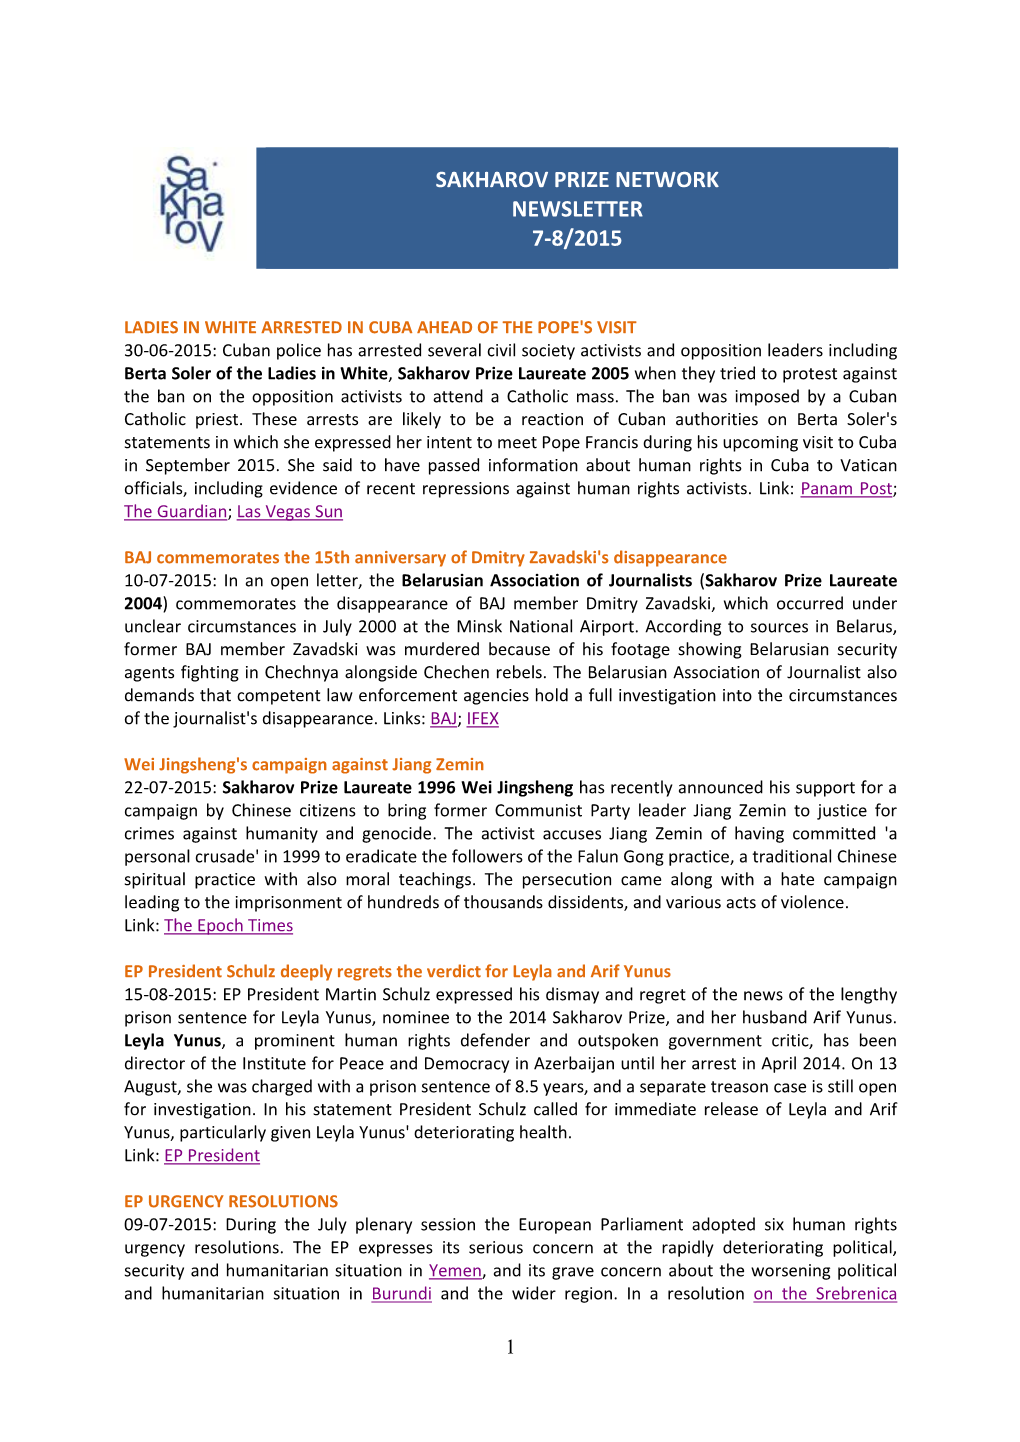 Sakharov Prize Network Newsletter 7-8/2015